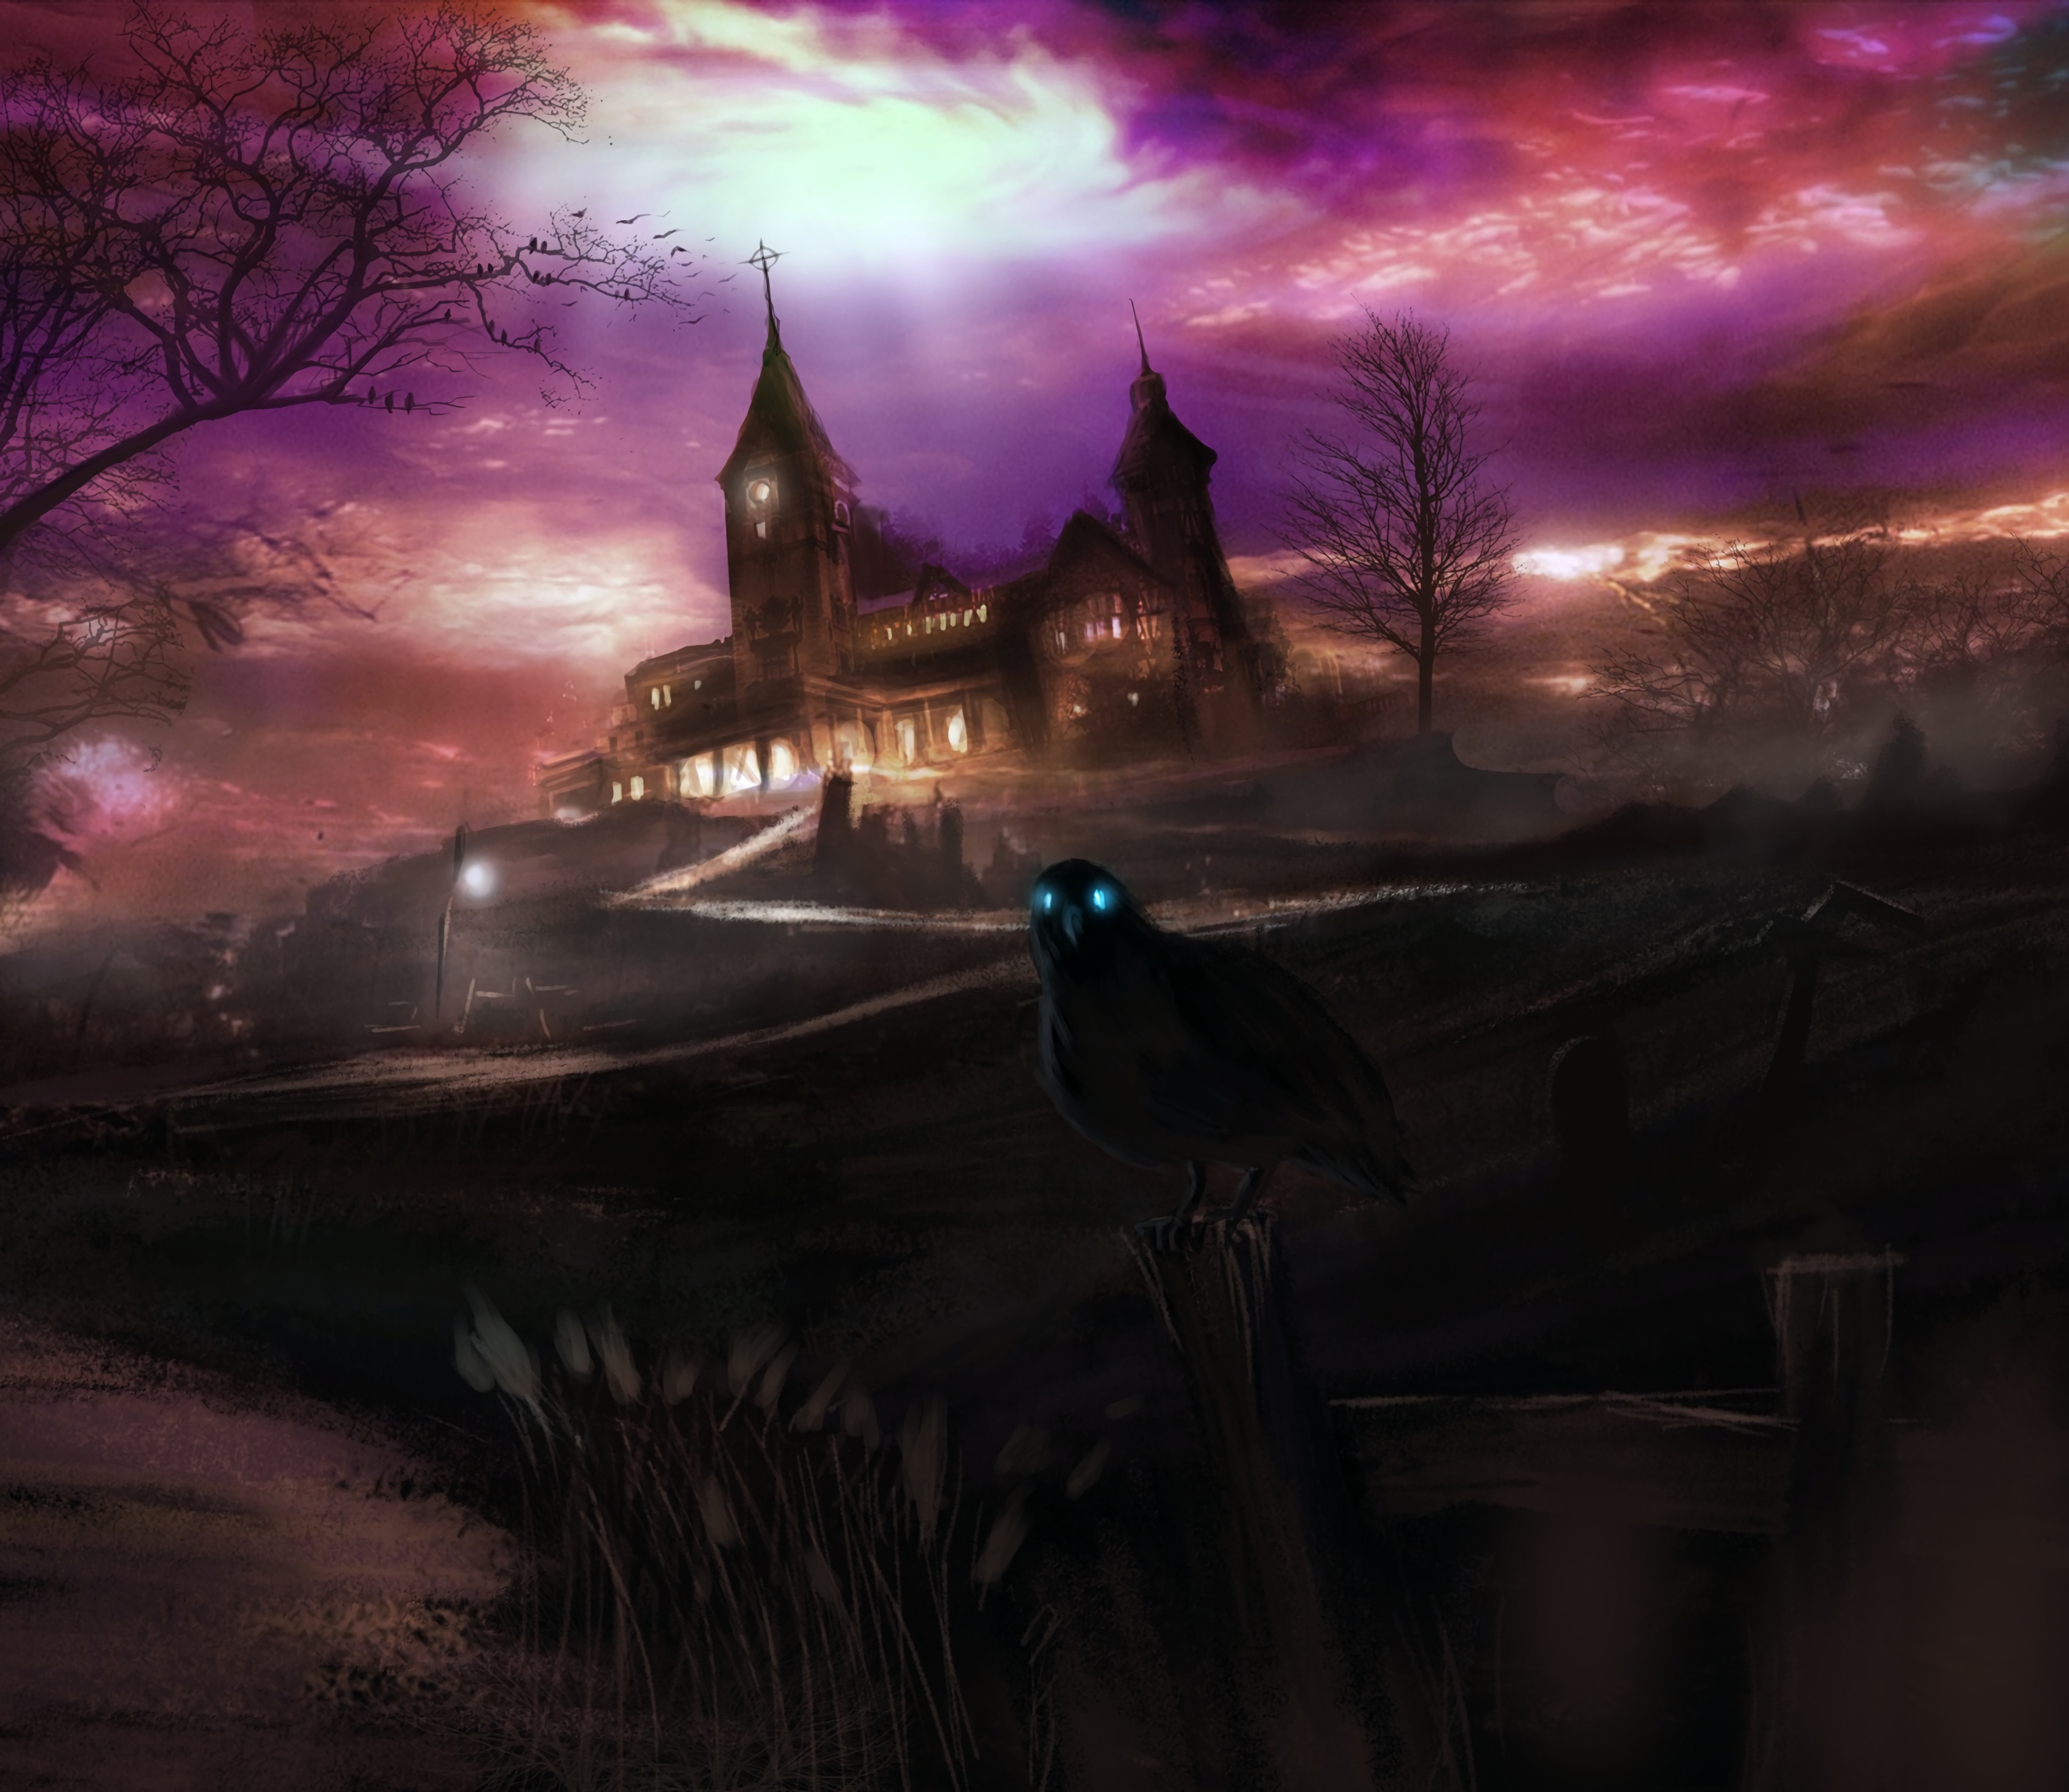 raven, art, dark, house, hill, spooky, eerie wallpaper for mobile